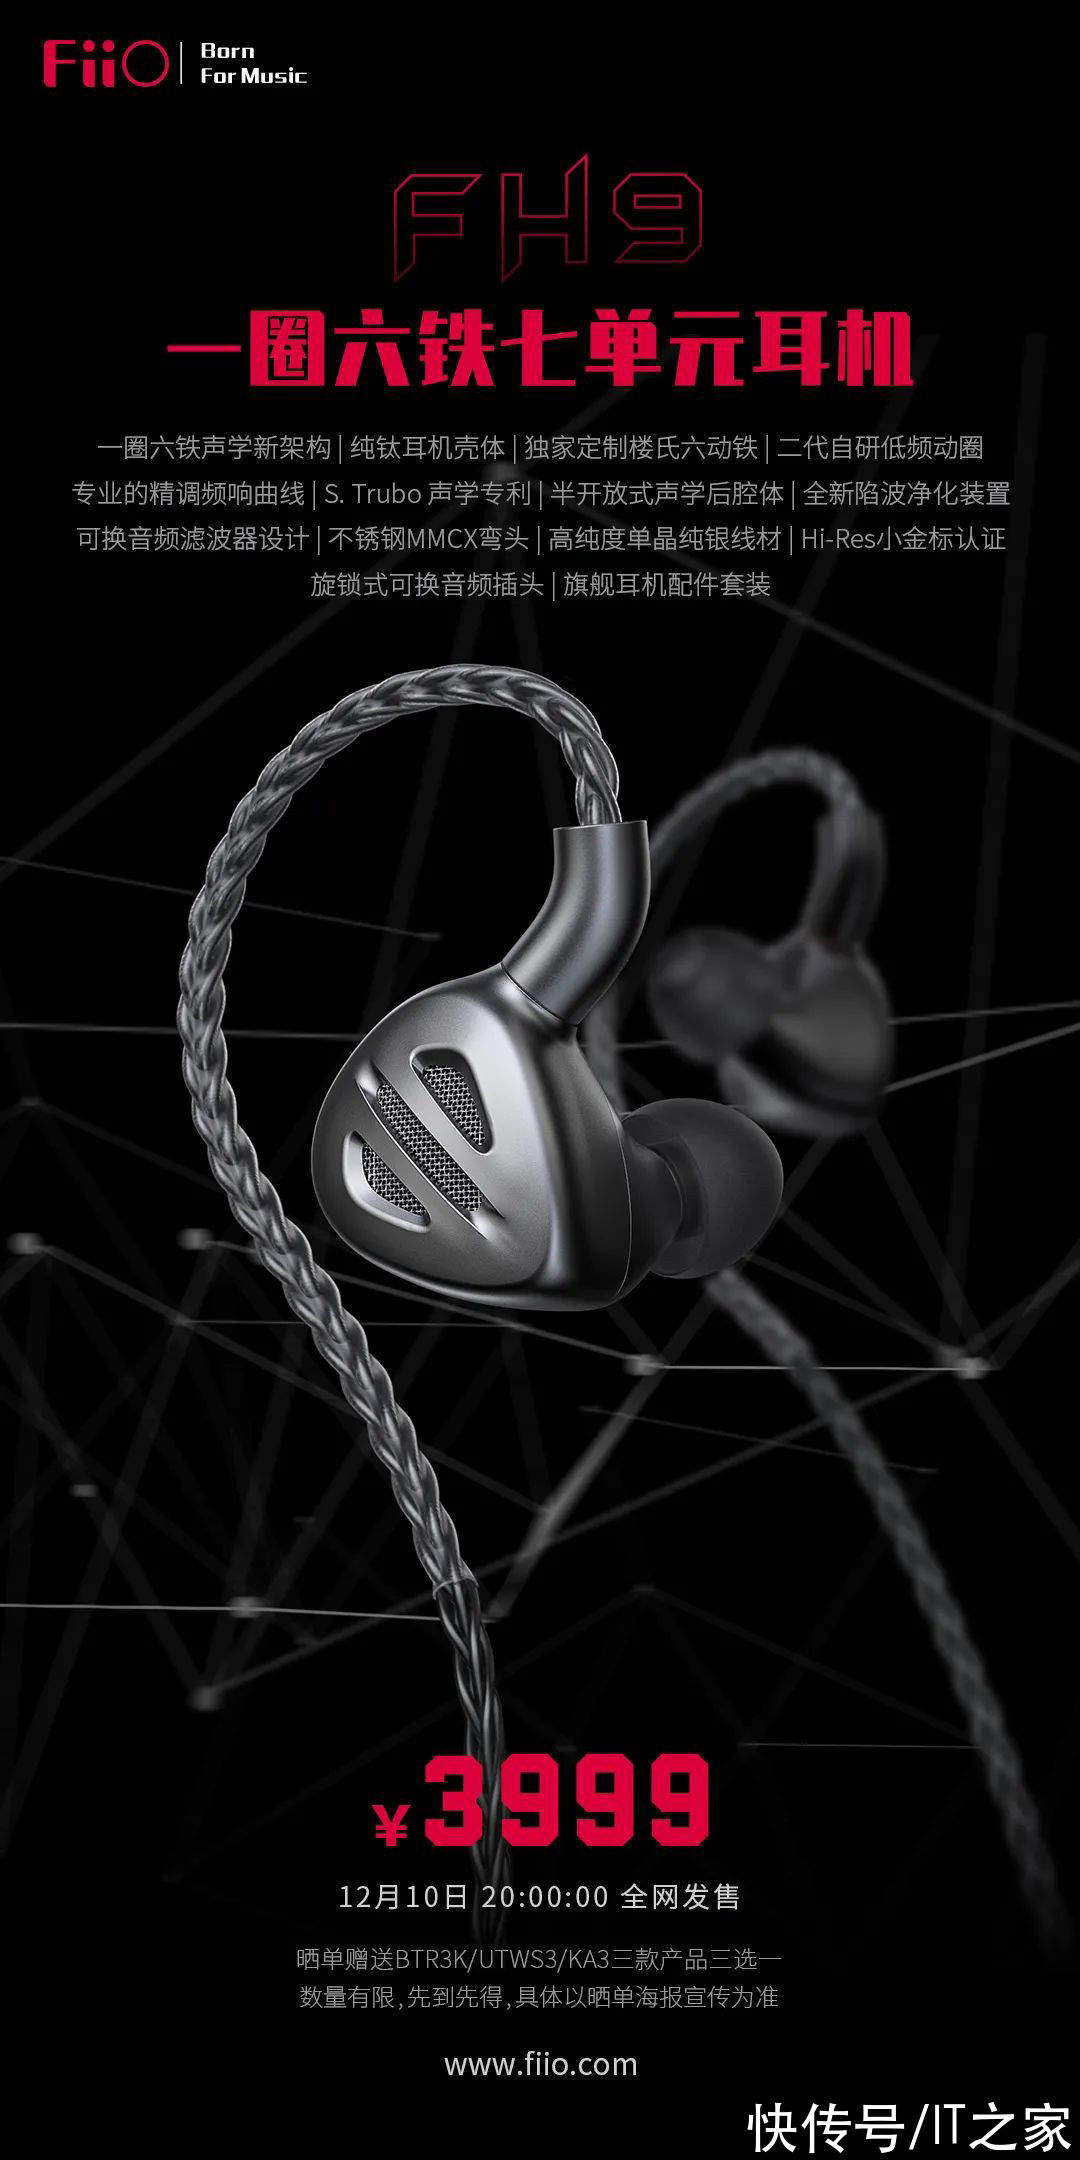 耳机壳|飞傲发布 FH9 旗舰圈铁耳机：一圈六铁/纯钛耳机壳，3999 元